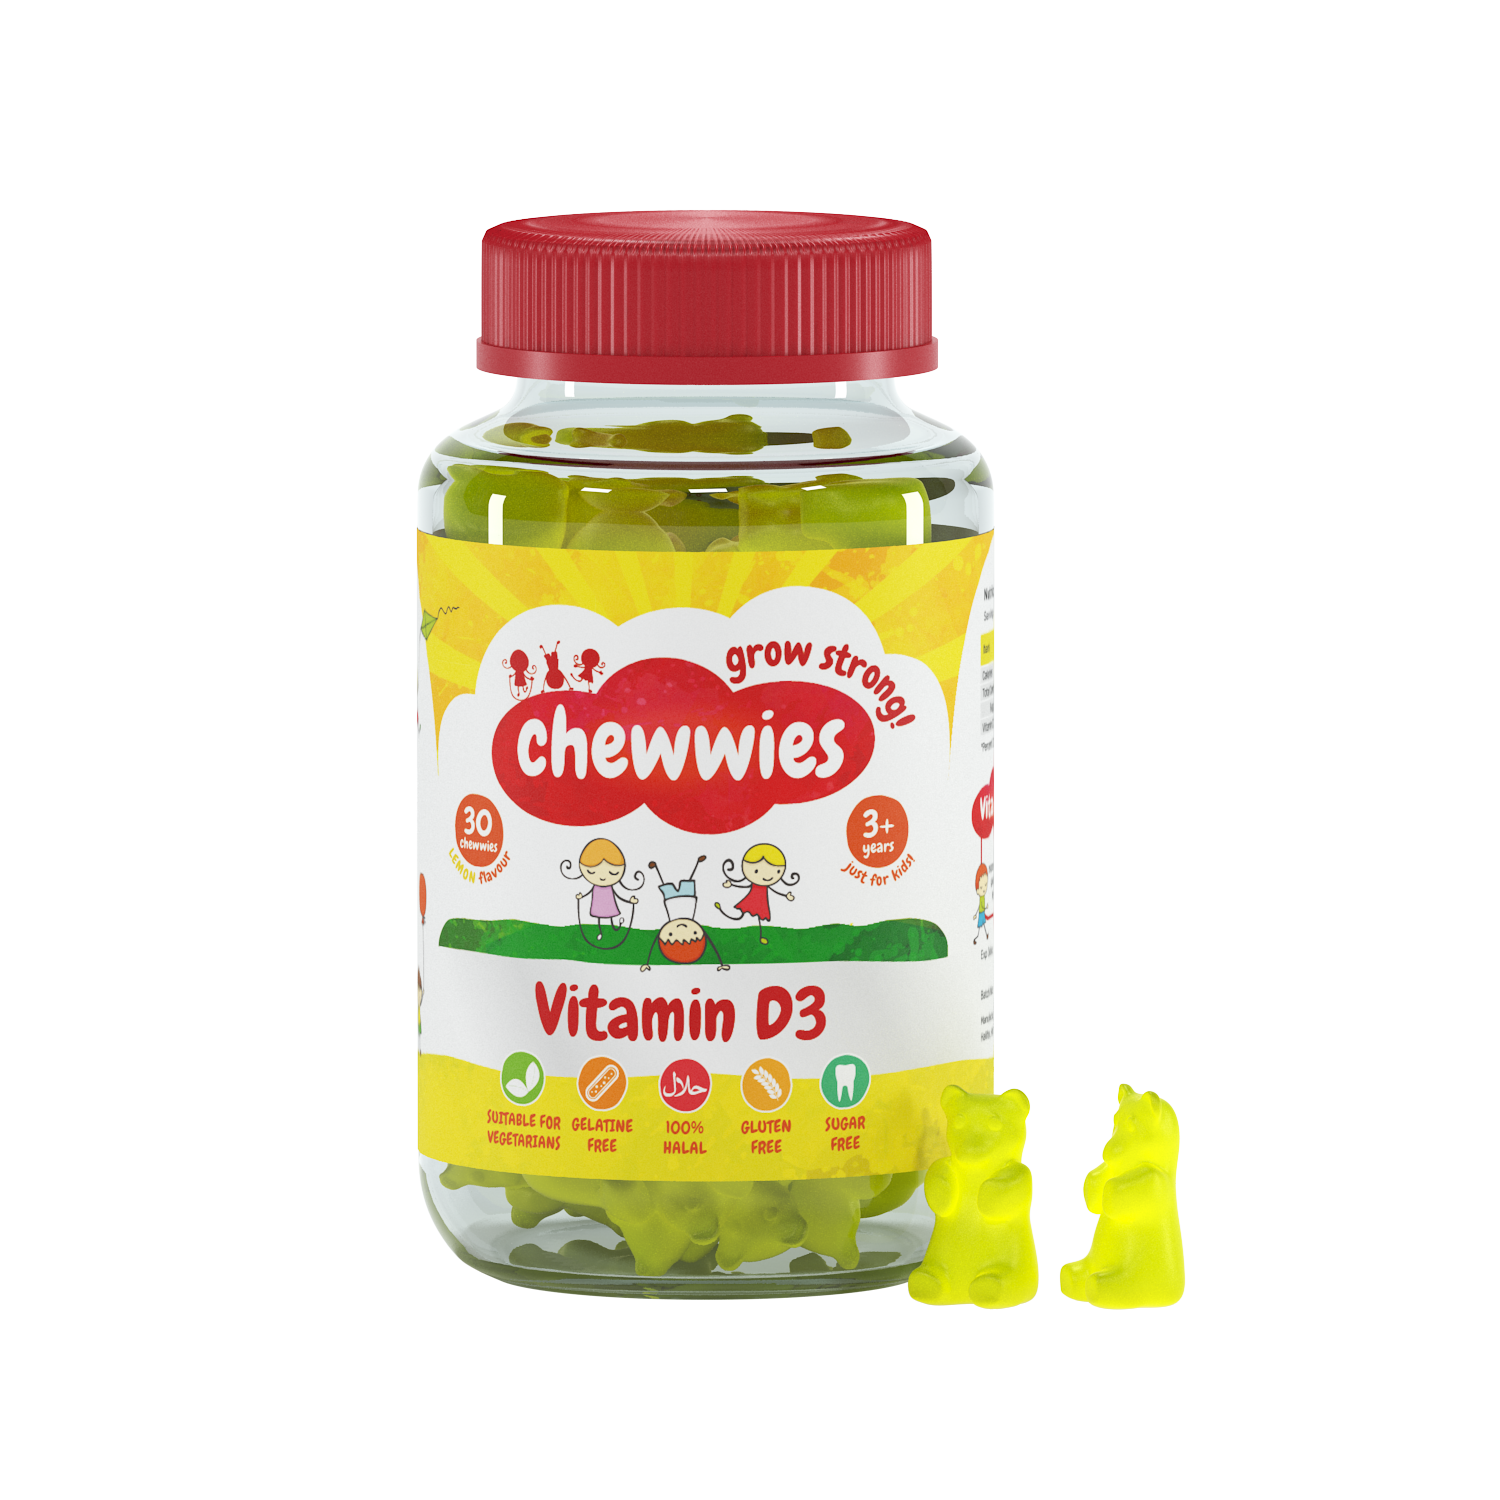 Chewwies Vitamin D3, 30 zuckerfreie, vegane Frucht-Kaubonbons mit Zitrusextrakten zur Unterstützung eines gesunden Wachstums und einer gesunden Entwicklung. 